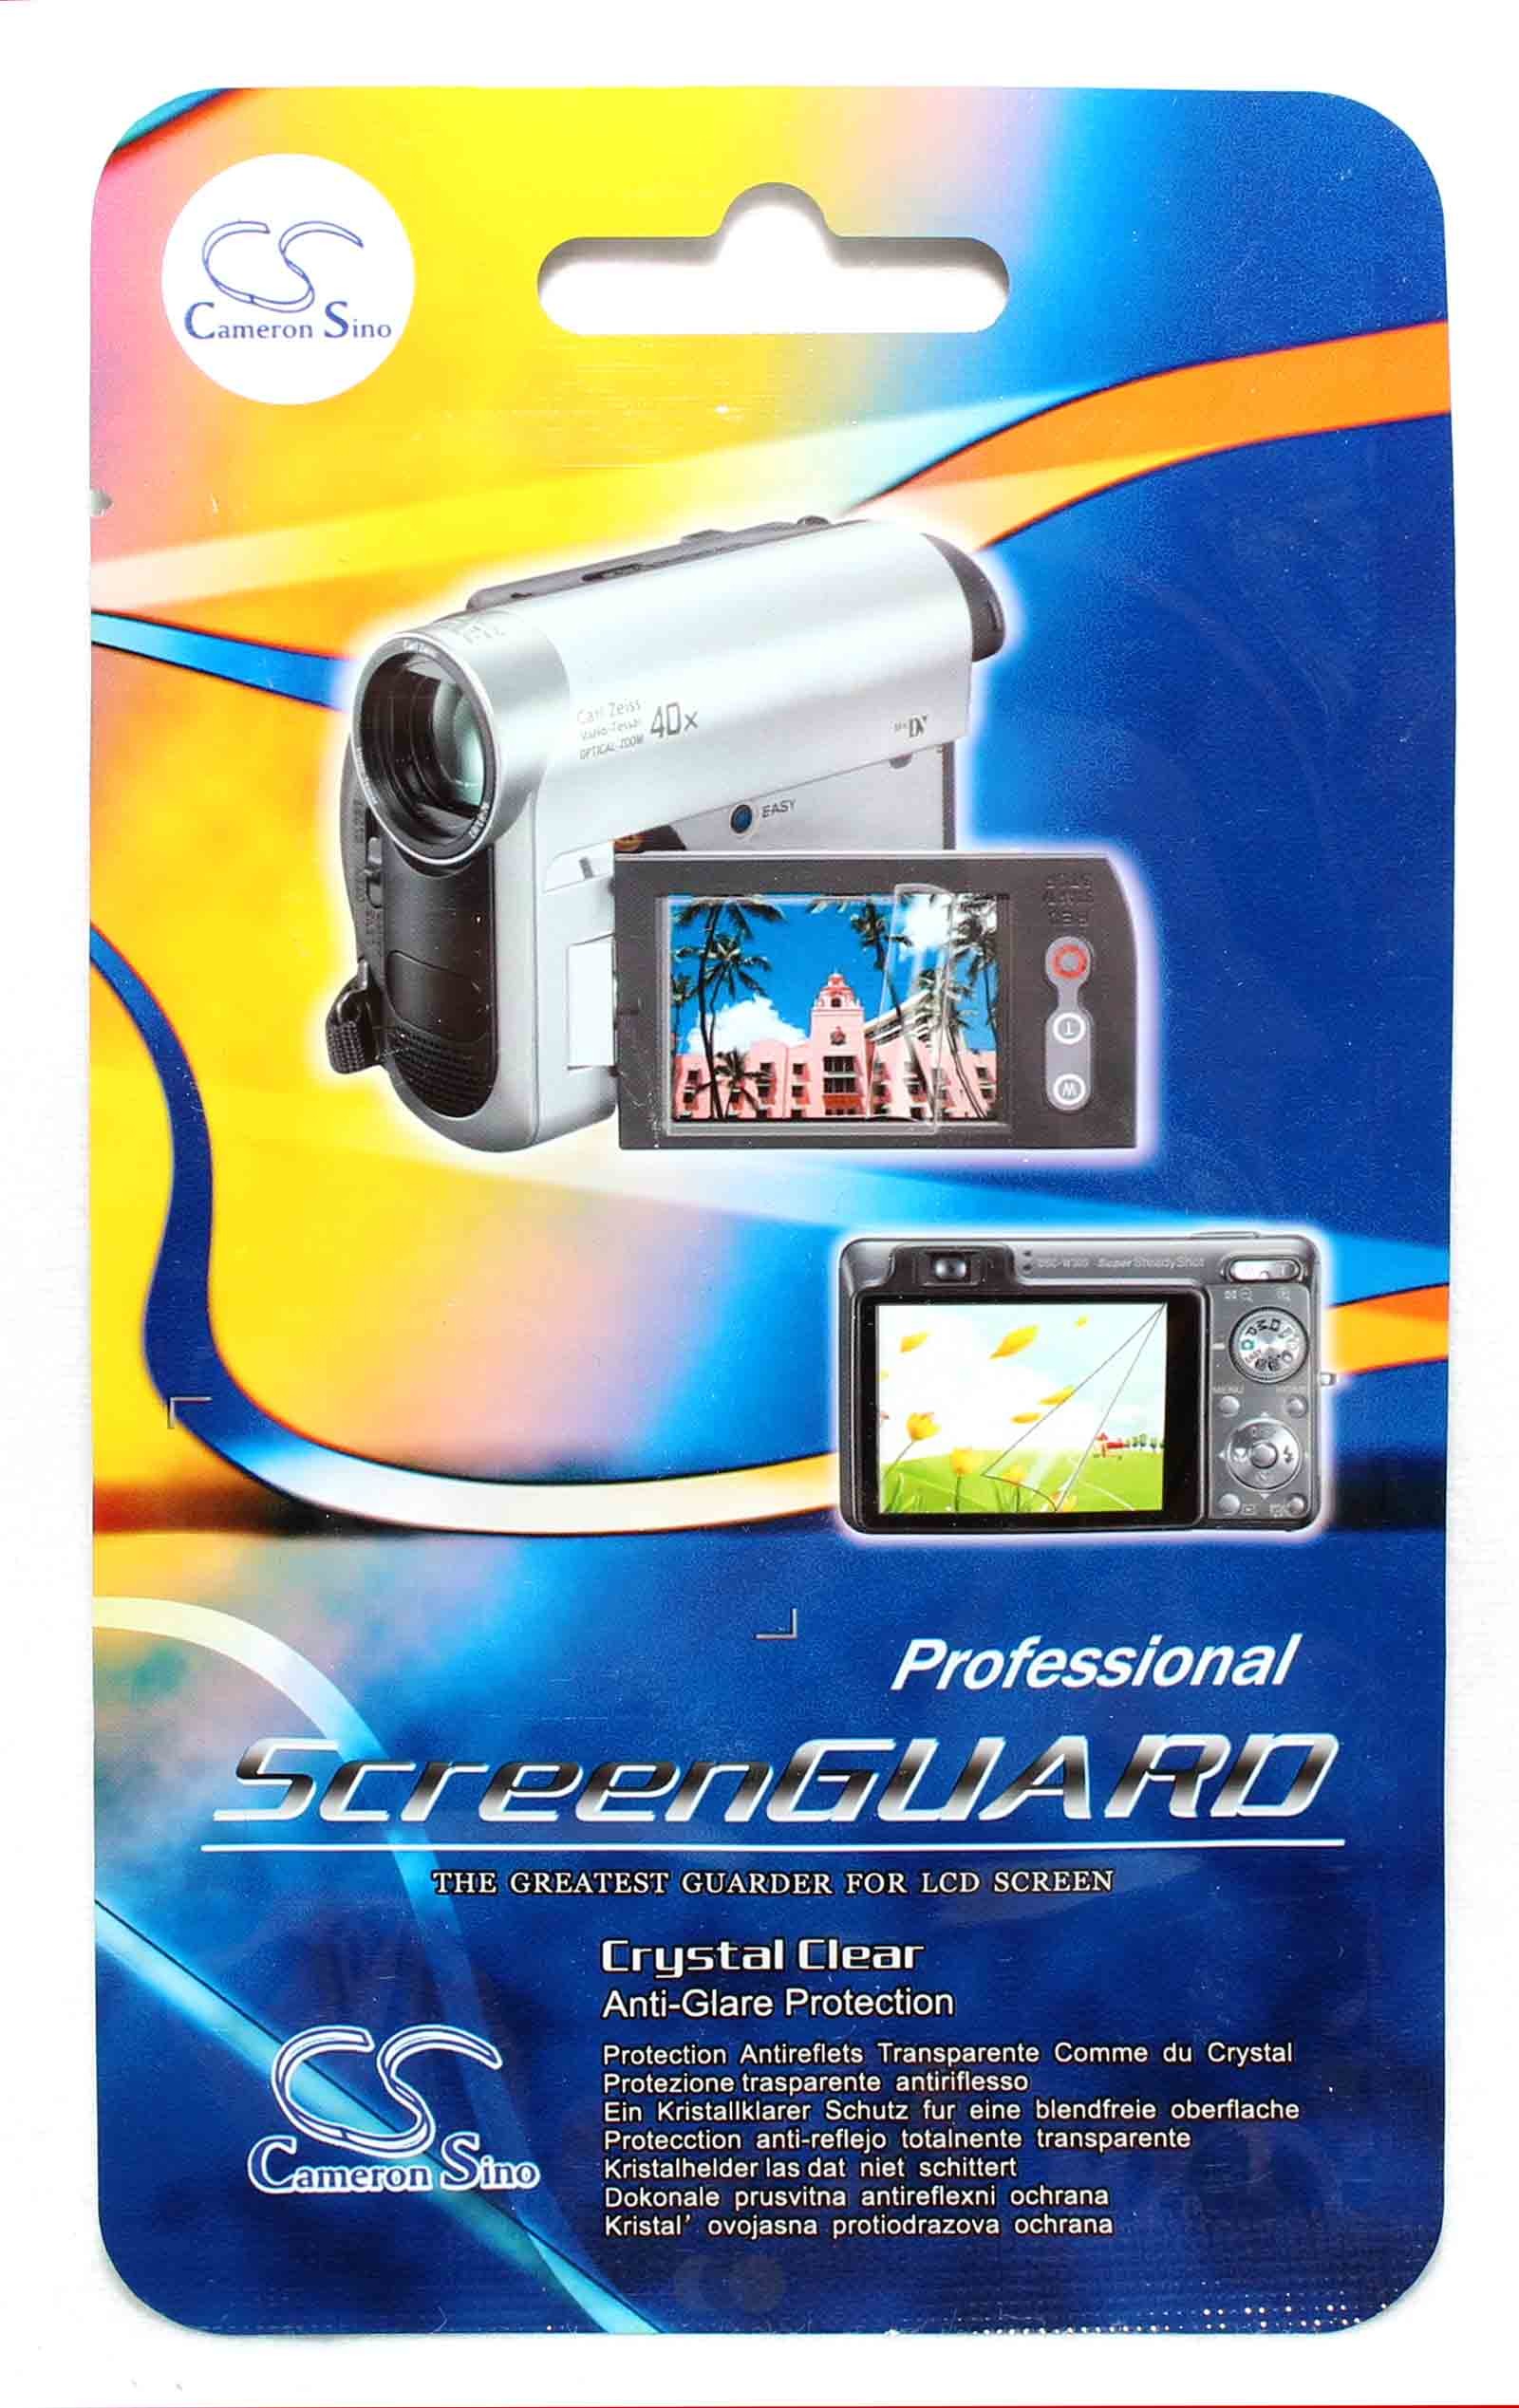 Displayschutzfolie LCD Screenguard 4.25" 55mm x 95,5mm, Navi, Smartphone, Kamera